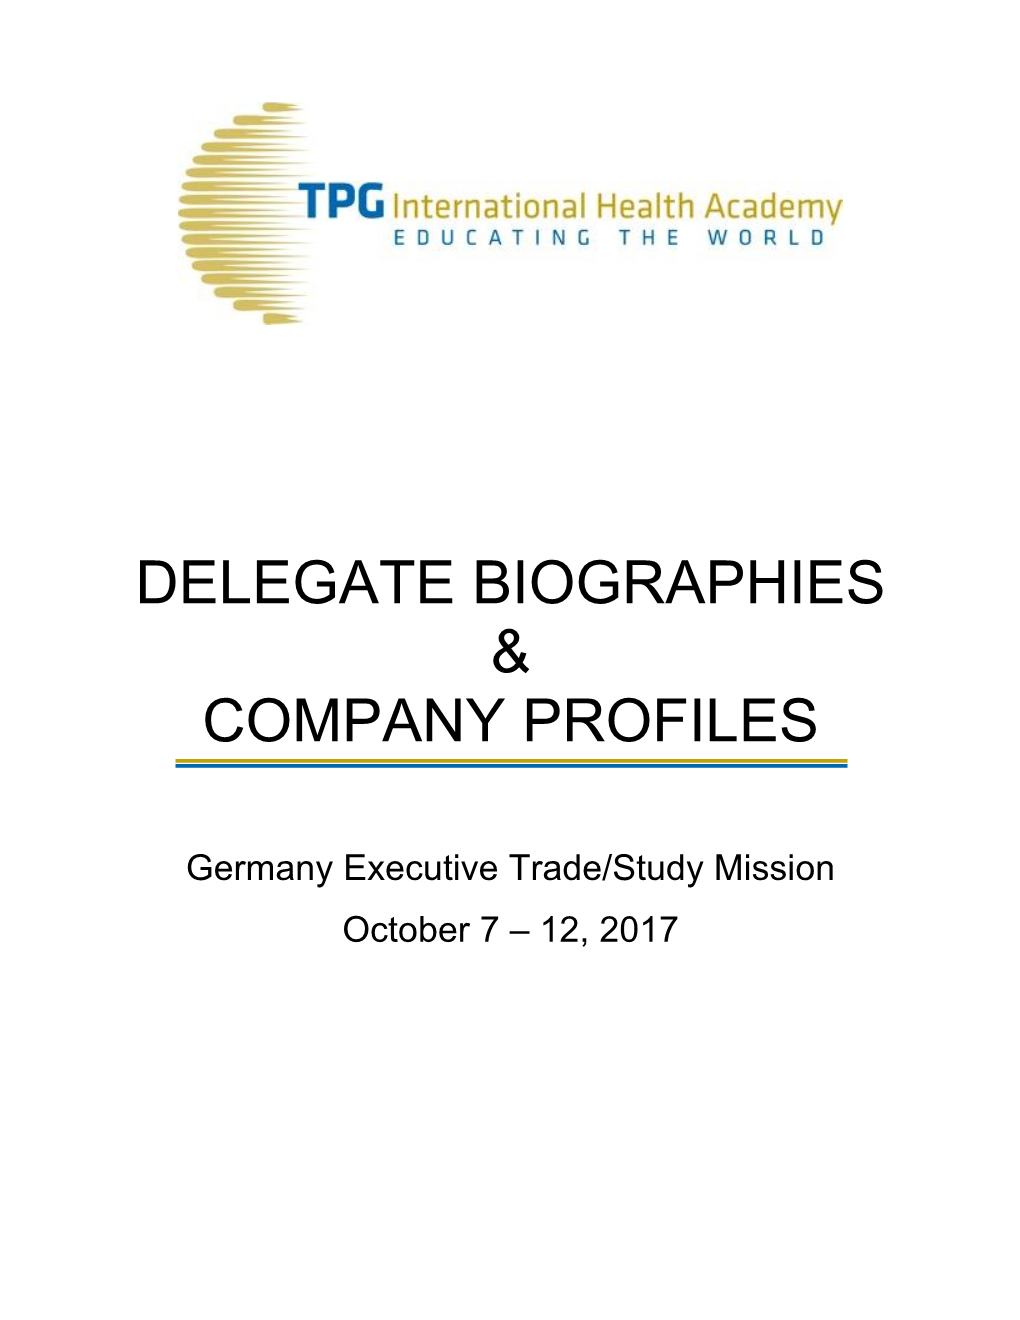 Delegate Biographies & Company Profiles